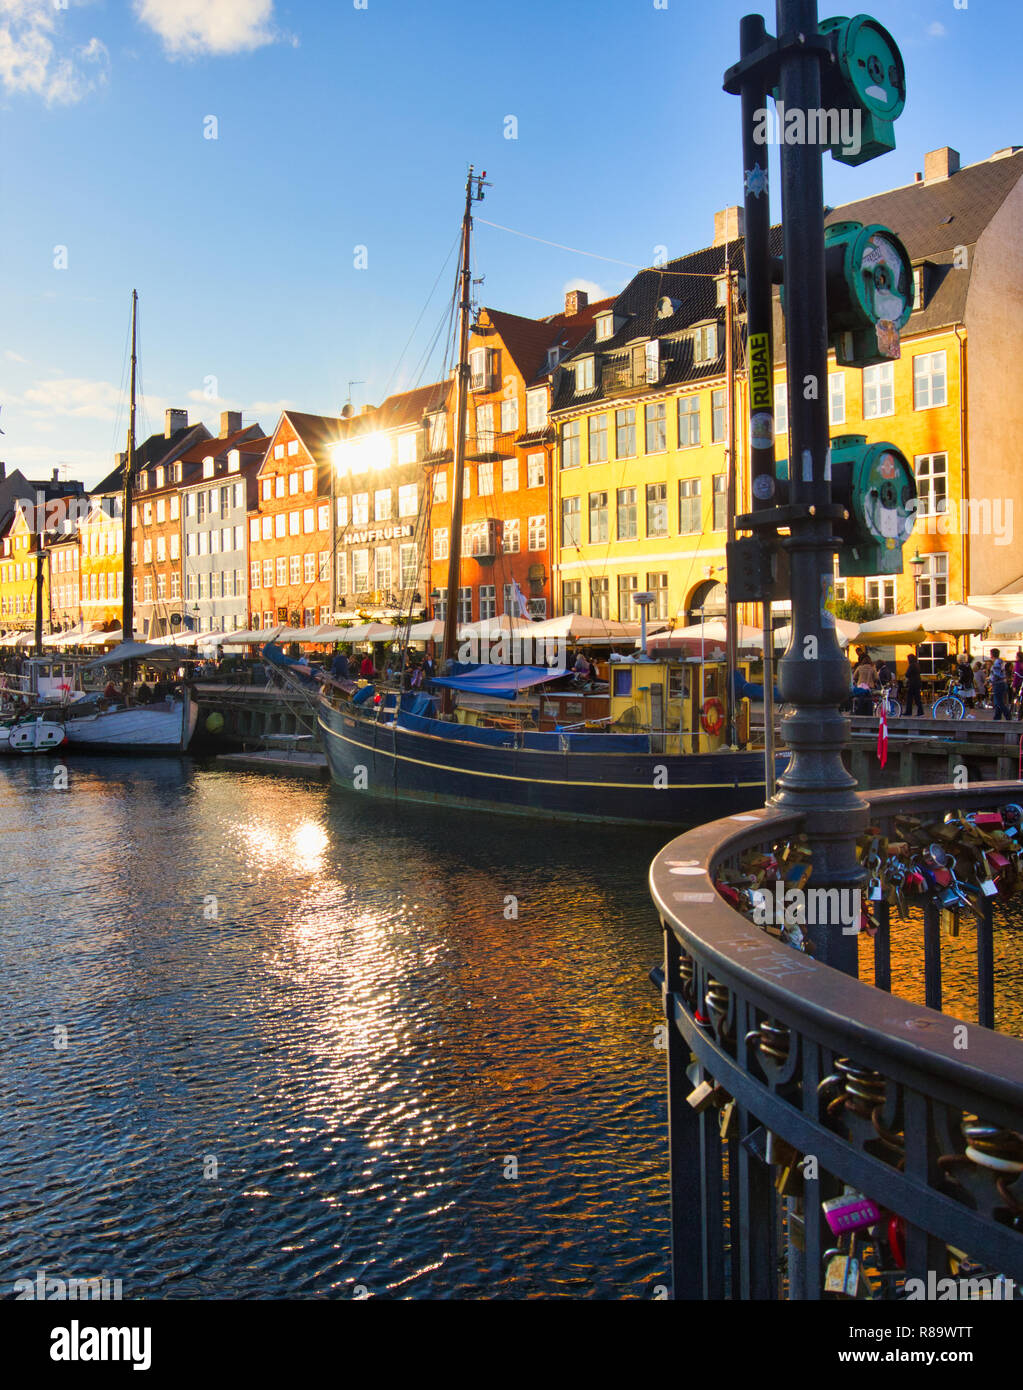 Canal de Nyhavn et maisons aux couleurs vives, Nyhavn, Copenhague, Danemark, Scandinavie Banque D'Images